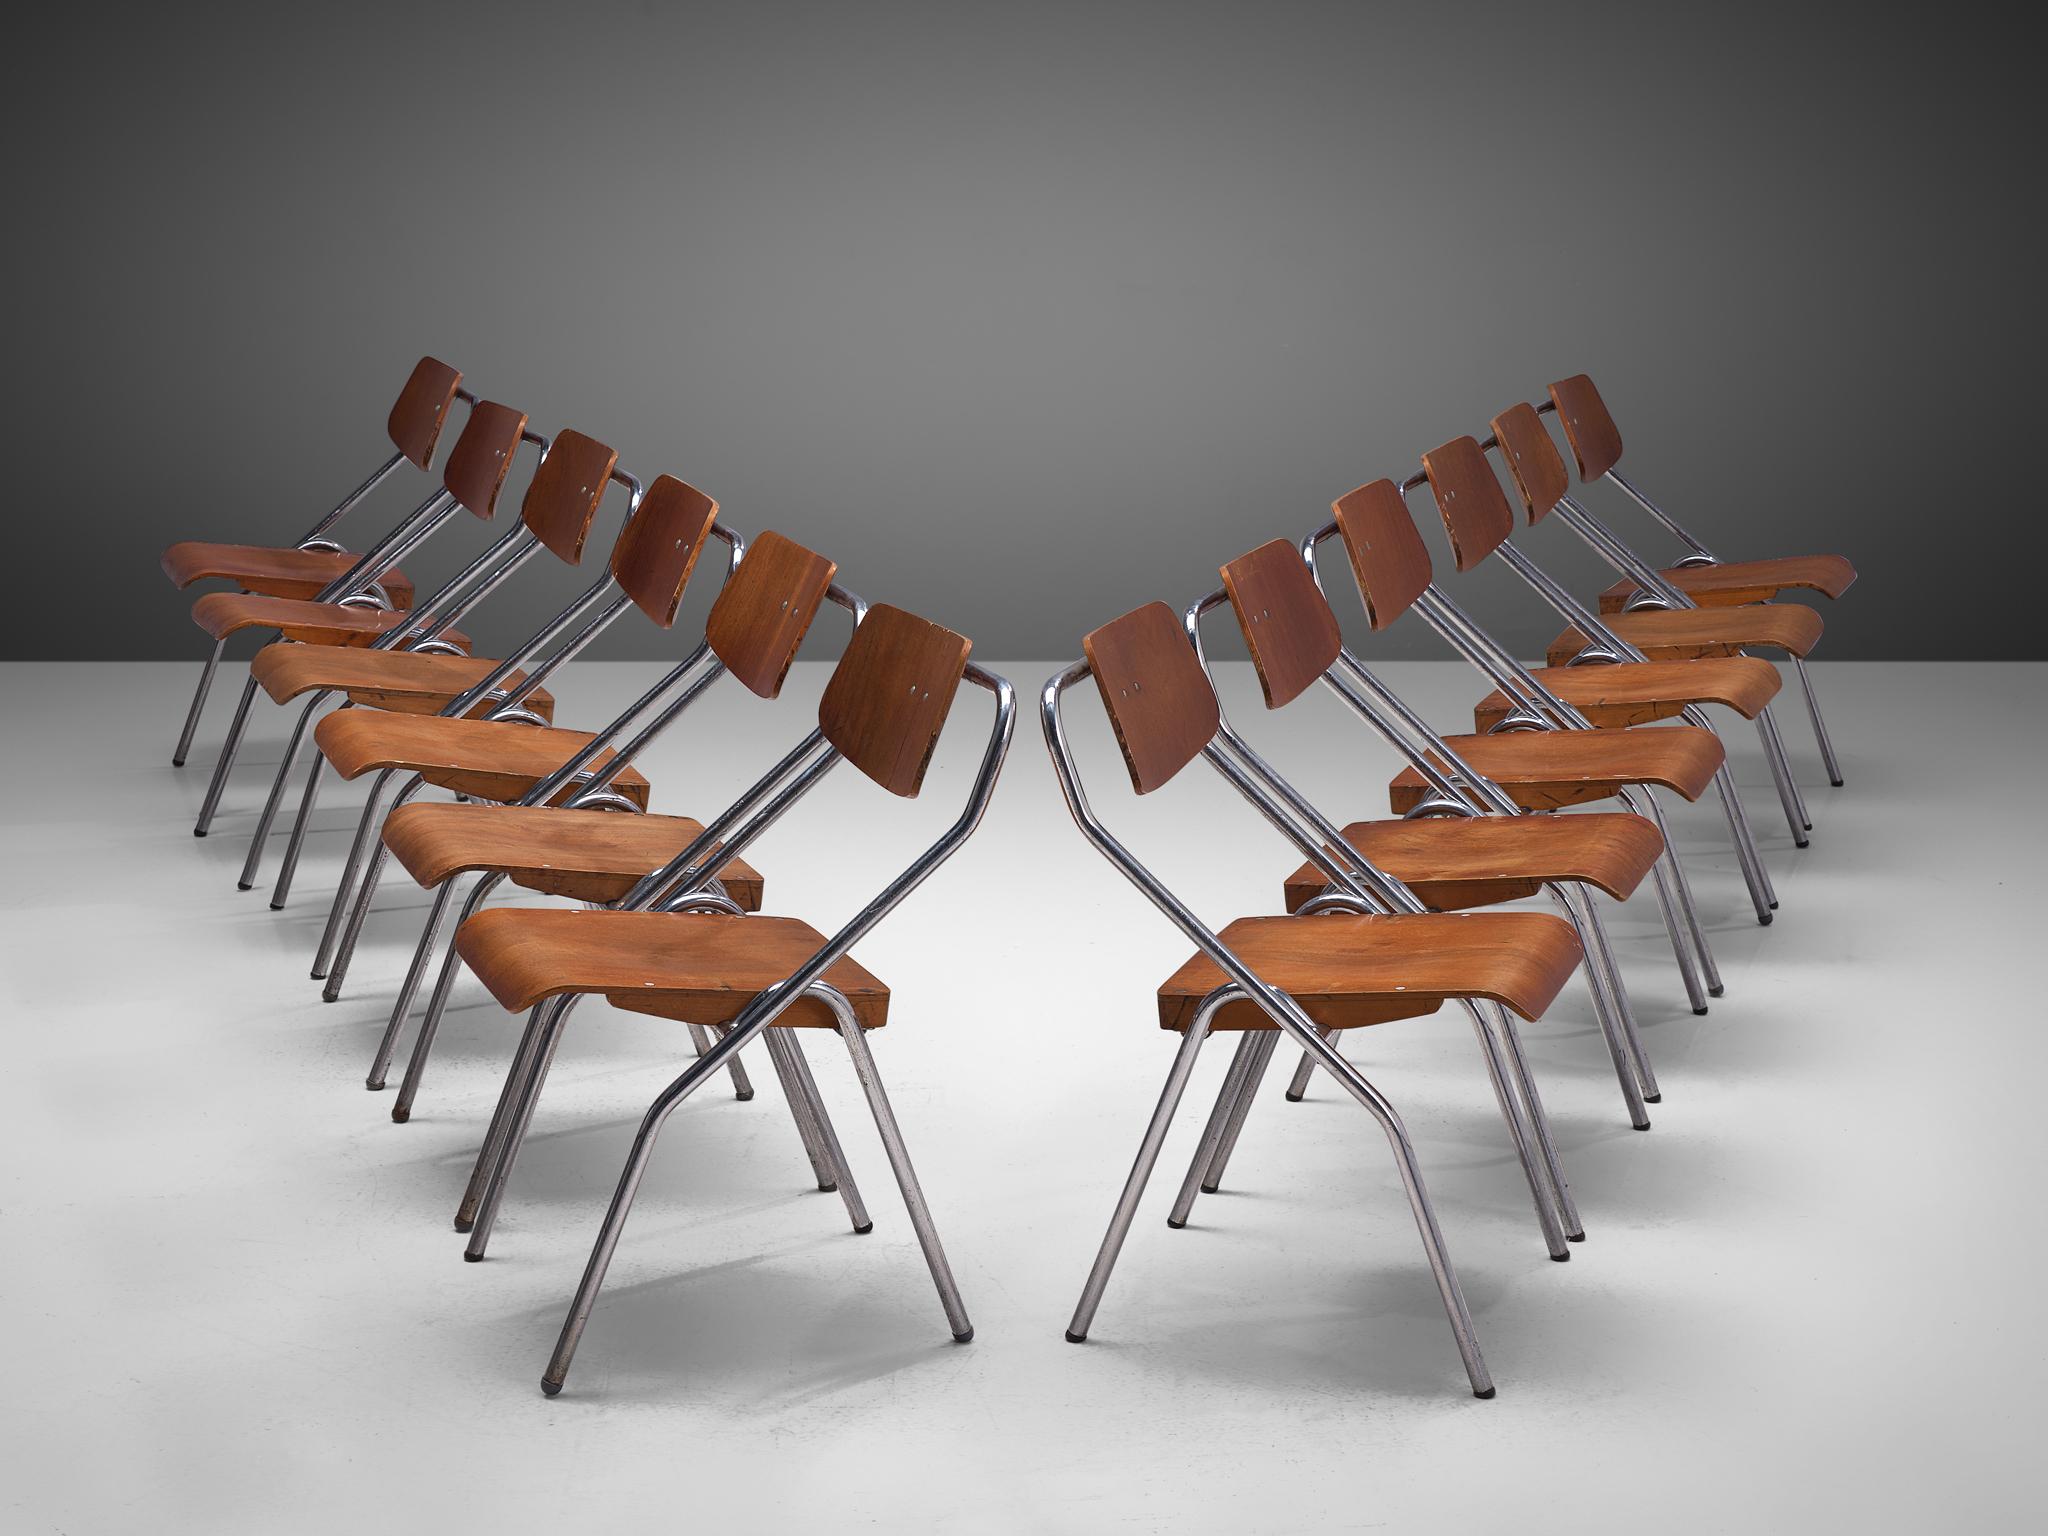 Satz klappbarer Stühle, verchromtes Metall und Sperrholz, Niederlande, ca. 1930

Dieses Set aus Stühlen der holländischen Schule aus der Mitte des letzten Jahrhunderts wäre eine gute Wahl für Ihr Projekt, wenn Sie Stühle suchen, die leicht zu